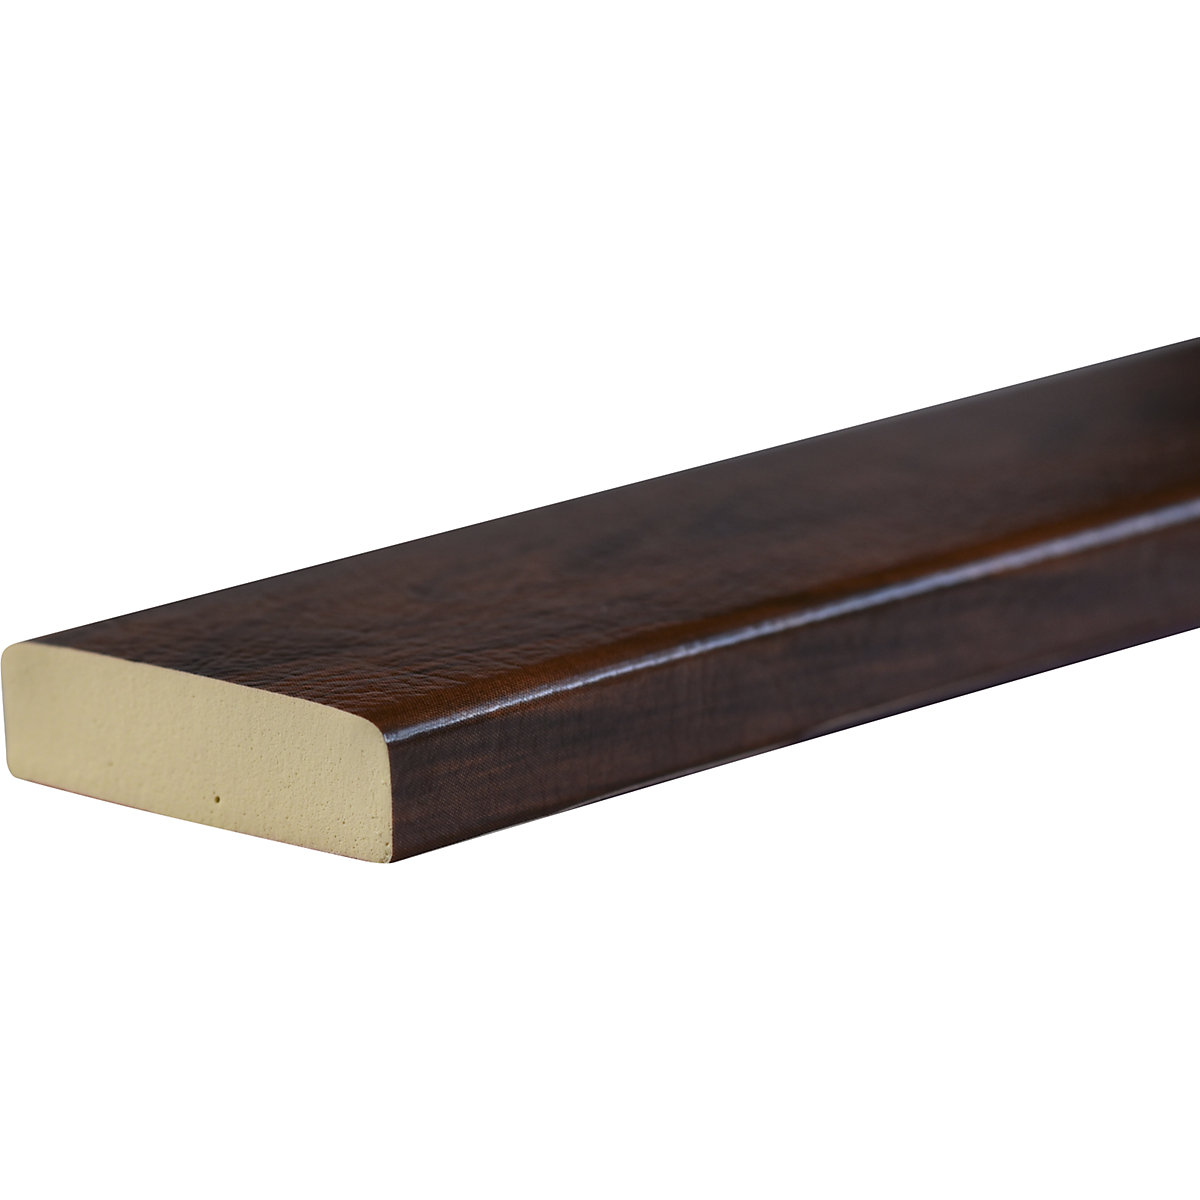 Zaščita površin Knuffi® – SHG, tip S, kos 1 m, imitacija češnjevega lesa-27